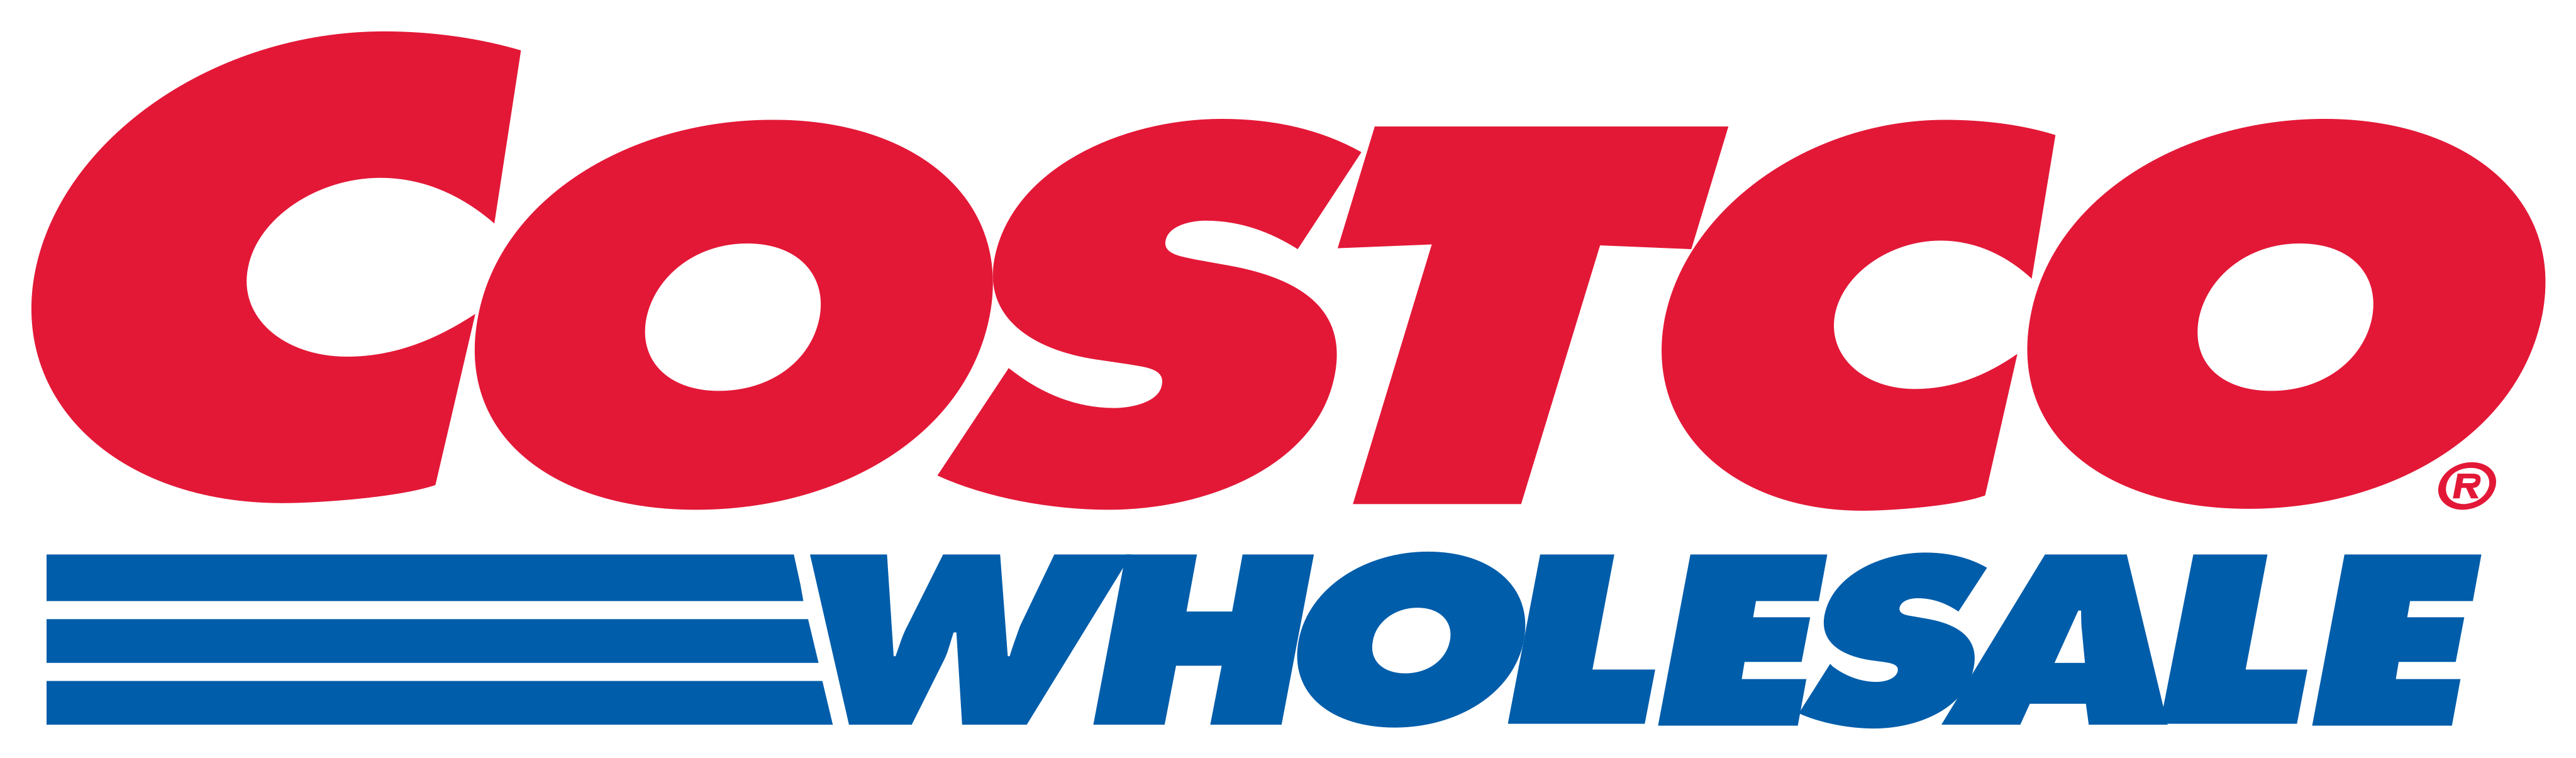 costco wholesale logo - Costco Wholesale Logo